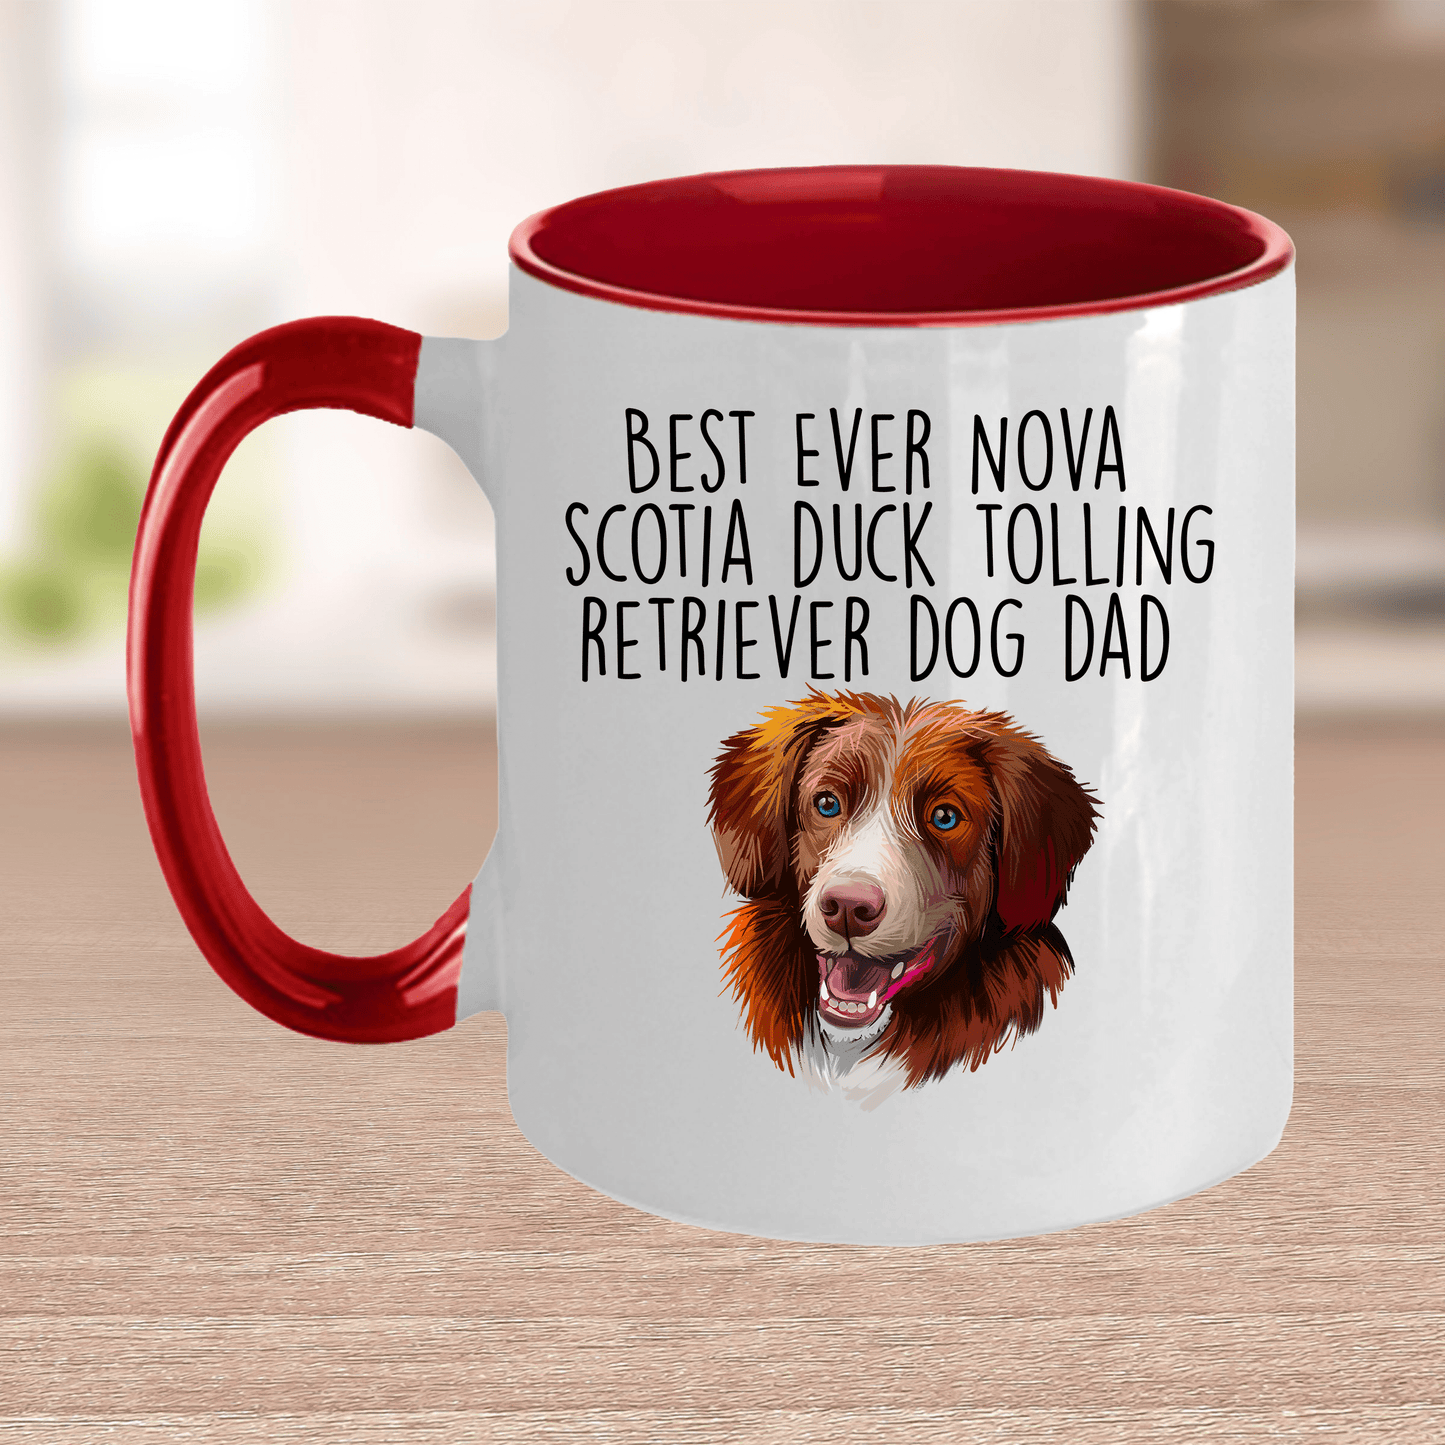 Best Ever Nova Scotia Duck Tolling Retriever Dog Dad Ceramic Coffee Mug